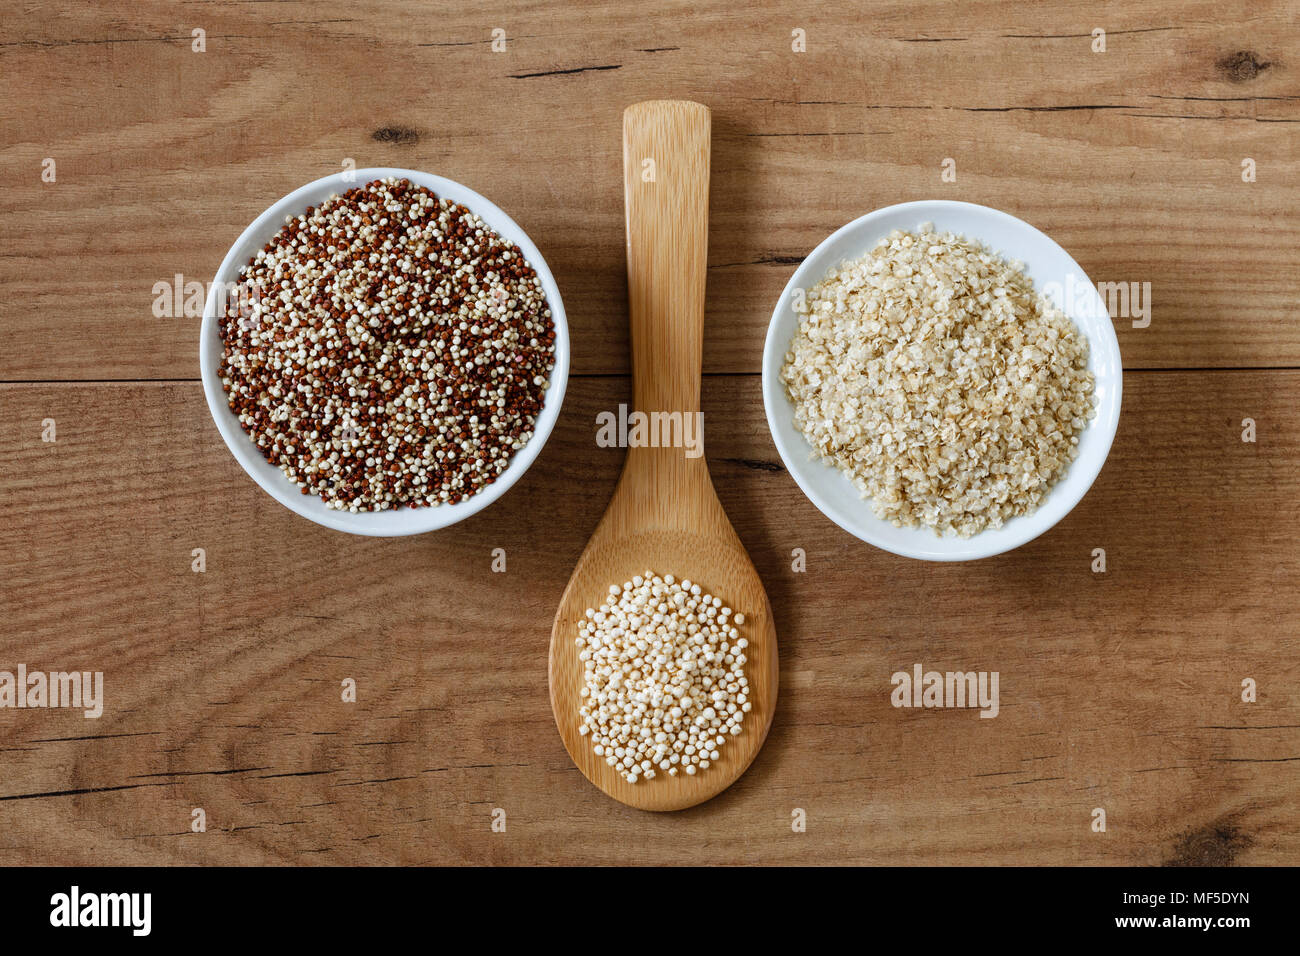 Quinoa graines, puffed quinoa and quinoa flakes Stock Photo